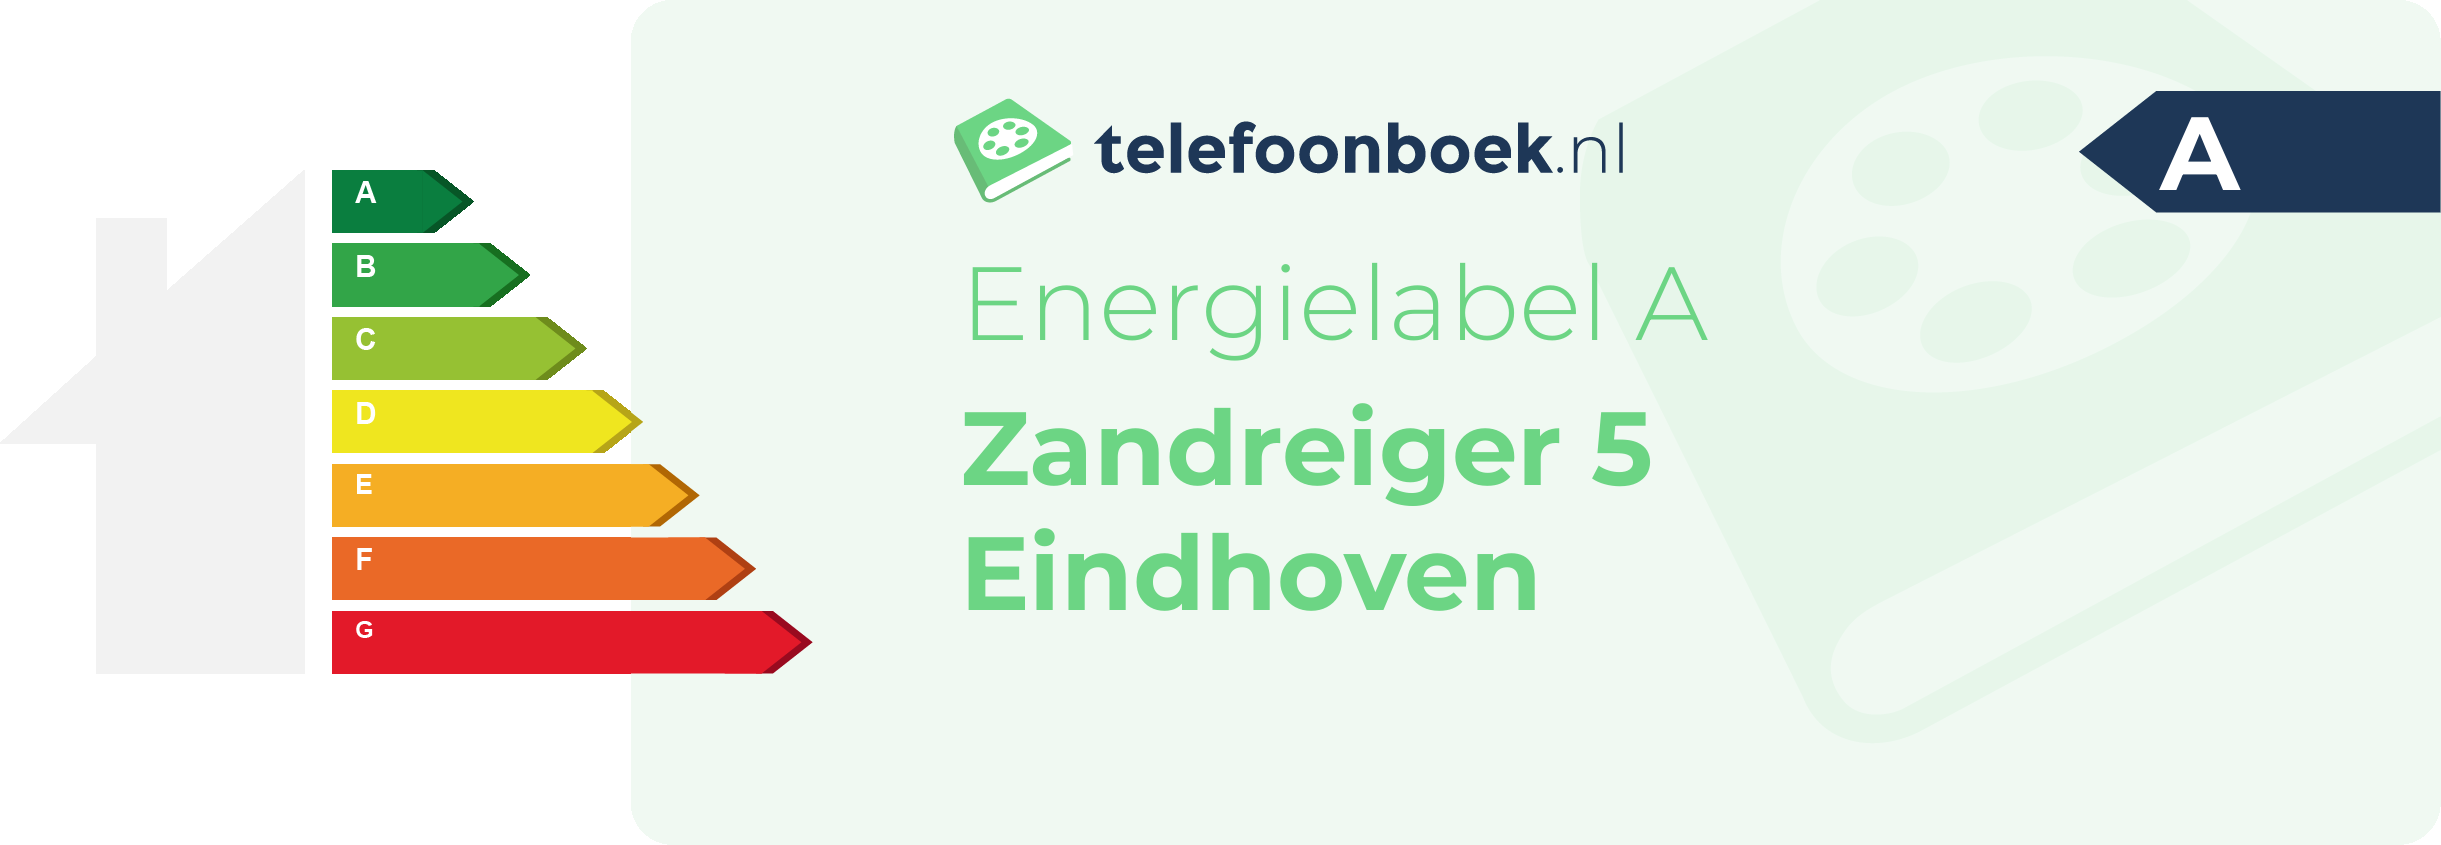 Energielabel Zandreiger 5 Eindhoven